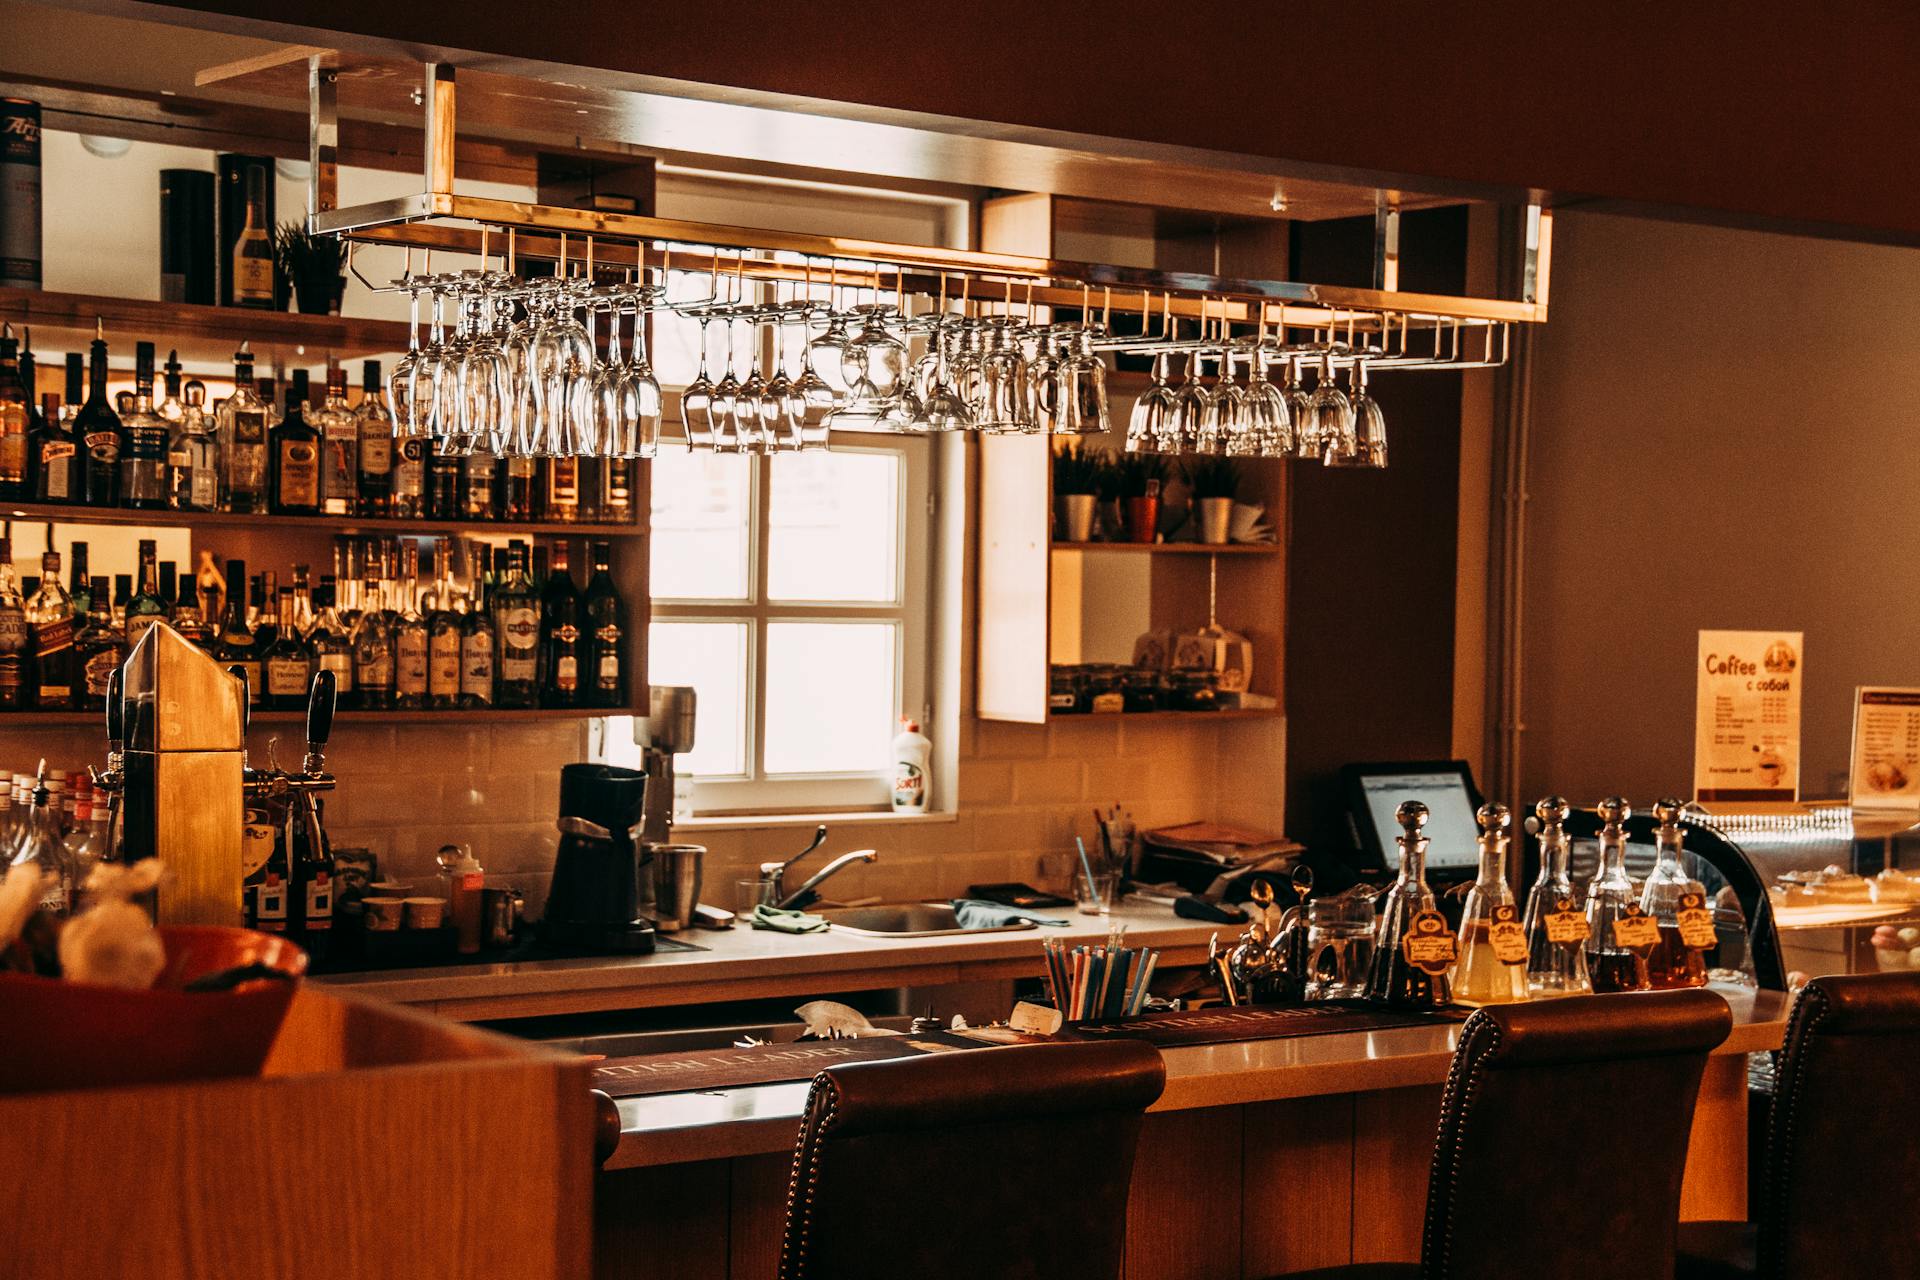 A hotel bar | Source: Pexels